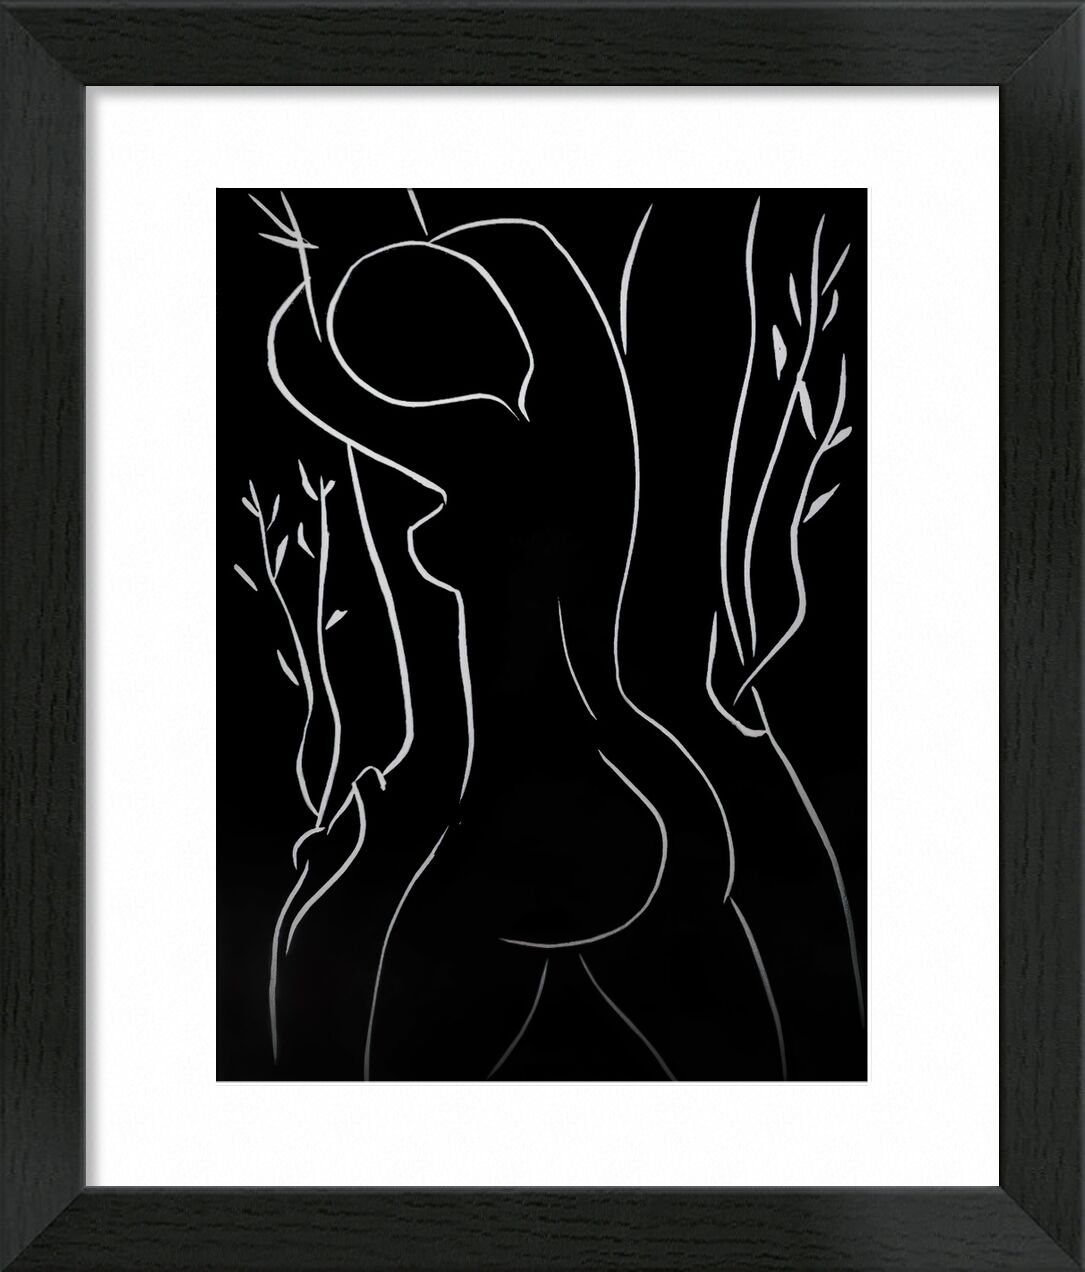 Pasiphae and Olive Tree - Henri Matisse von Bildende Kunst, Prodi Art, Schwarz und weiß, nackt, Frau, Bleistift, Zeichnung, Matisse